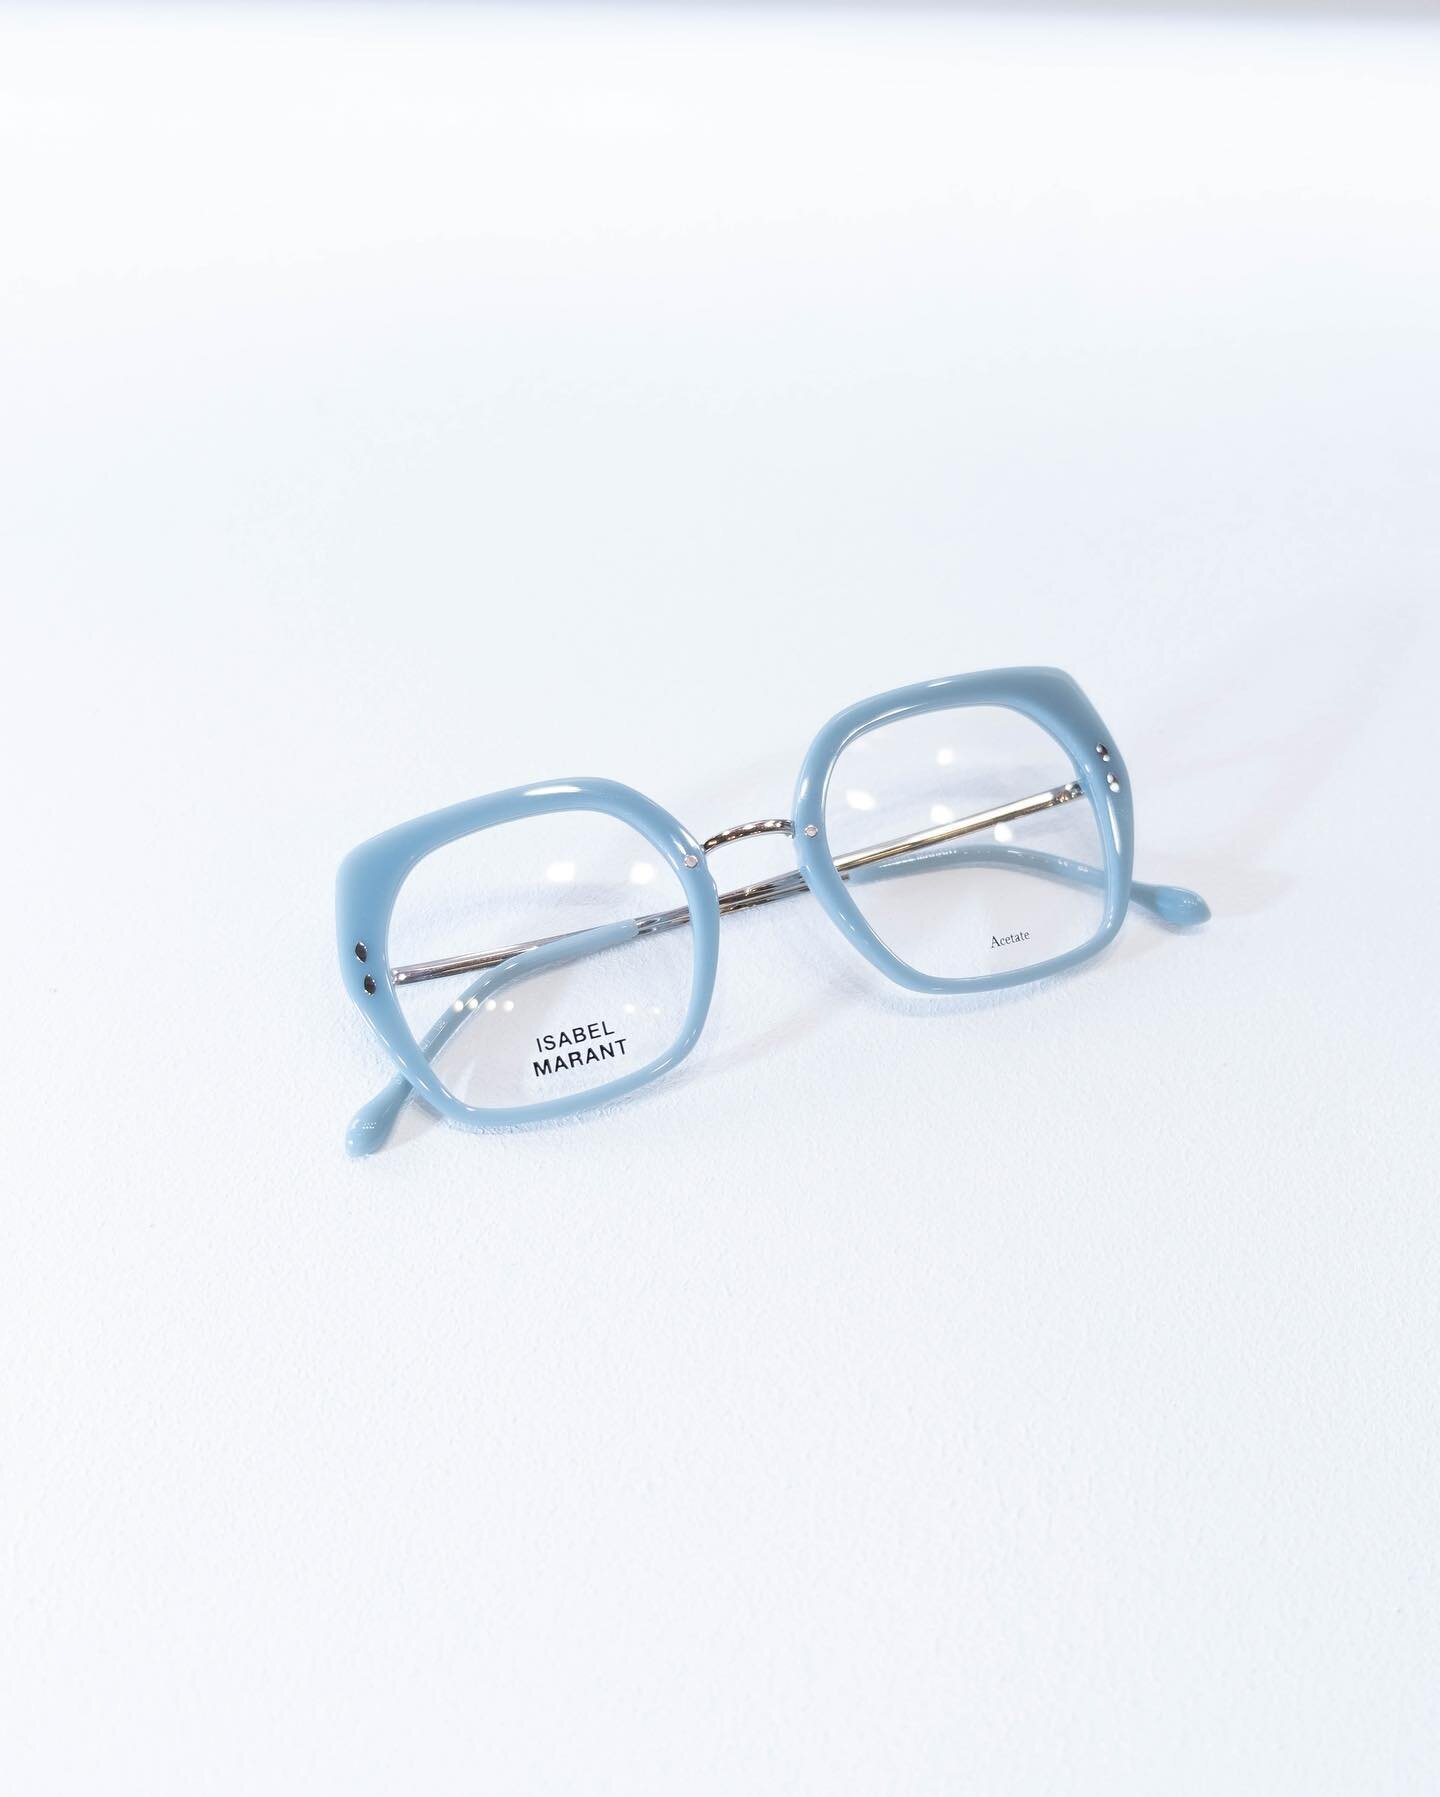 Retrouvez la collection Isabel Marant, optique &amp; solaire et son style audacieux en boutique! 
#lunettesdevue #lunettesdesoleil #lunettesfemme #isabelmarant #lunettesisabelmarant